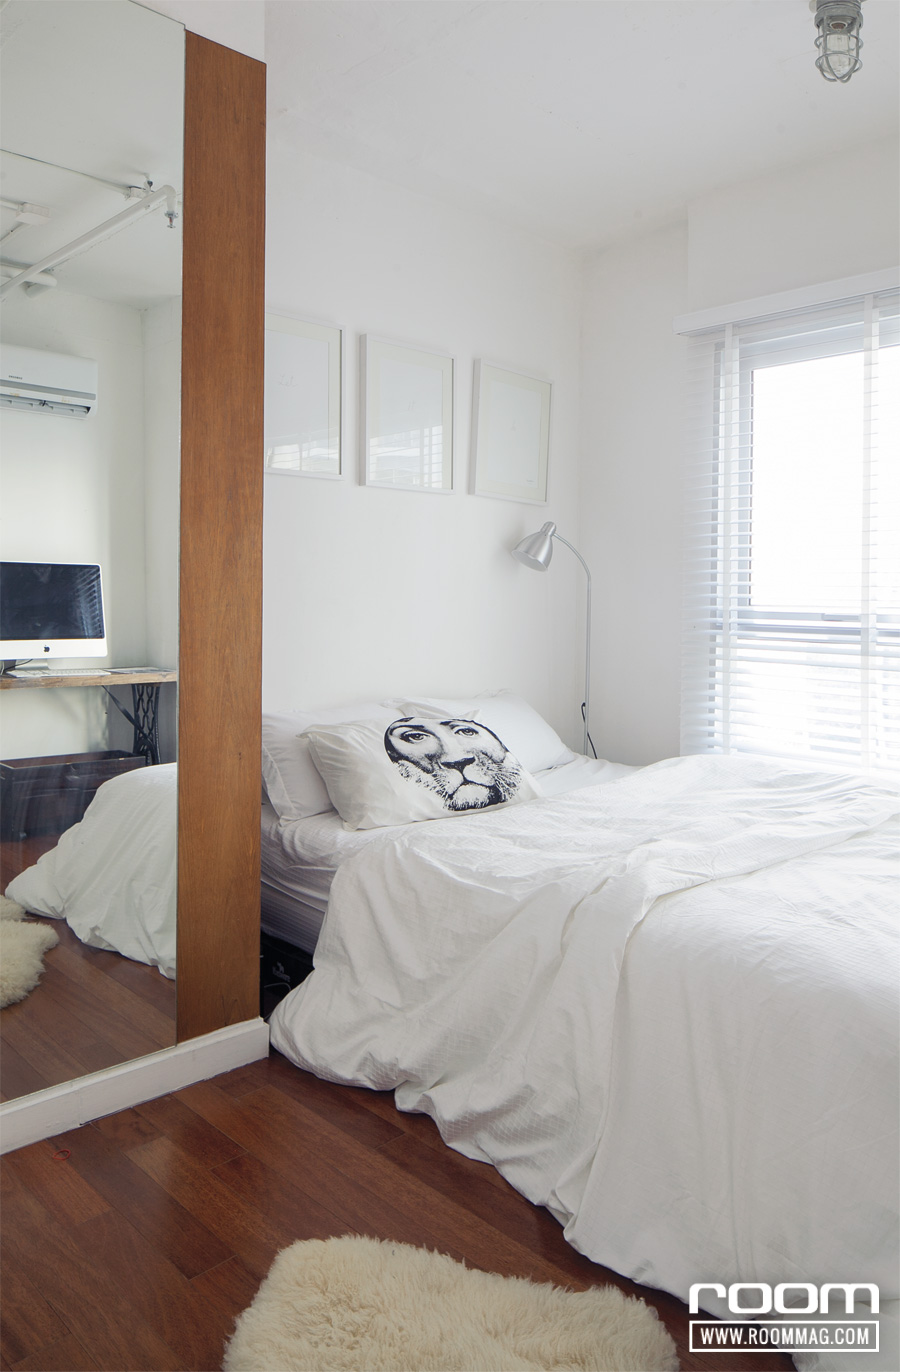 ห้องนอนเป็นสีขาวสะอาดทั้งหมด เพราะต้องการให้เป็นพื้นที่สำหรับนอนหลับและพักผ่อนอย่างแท้จริง